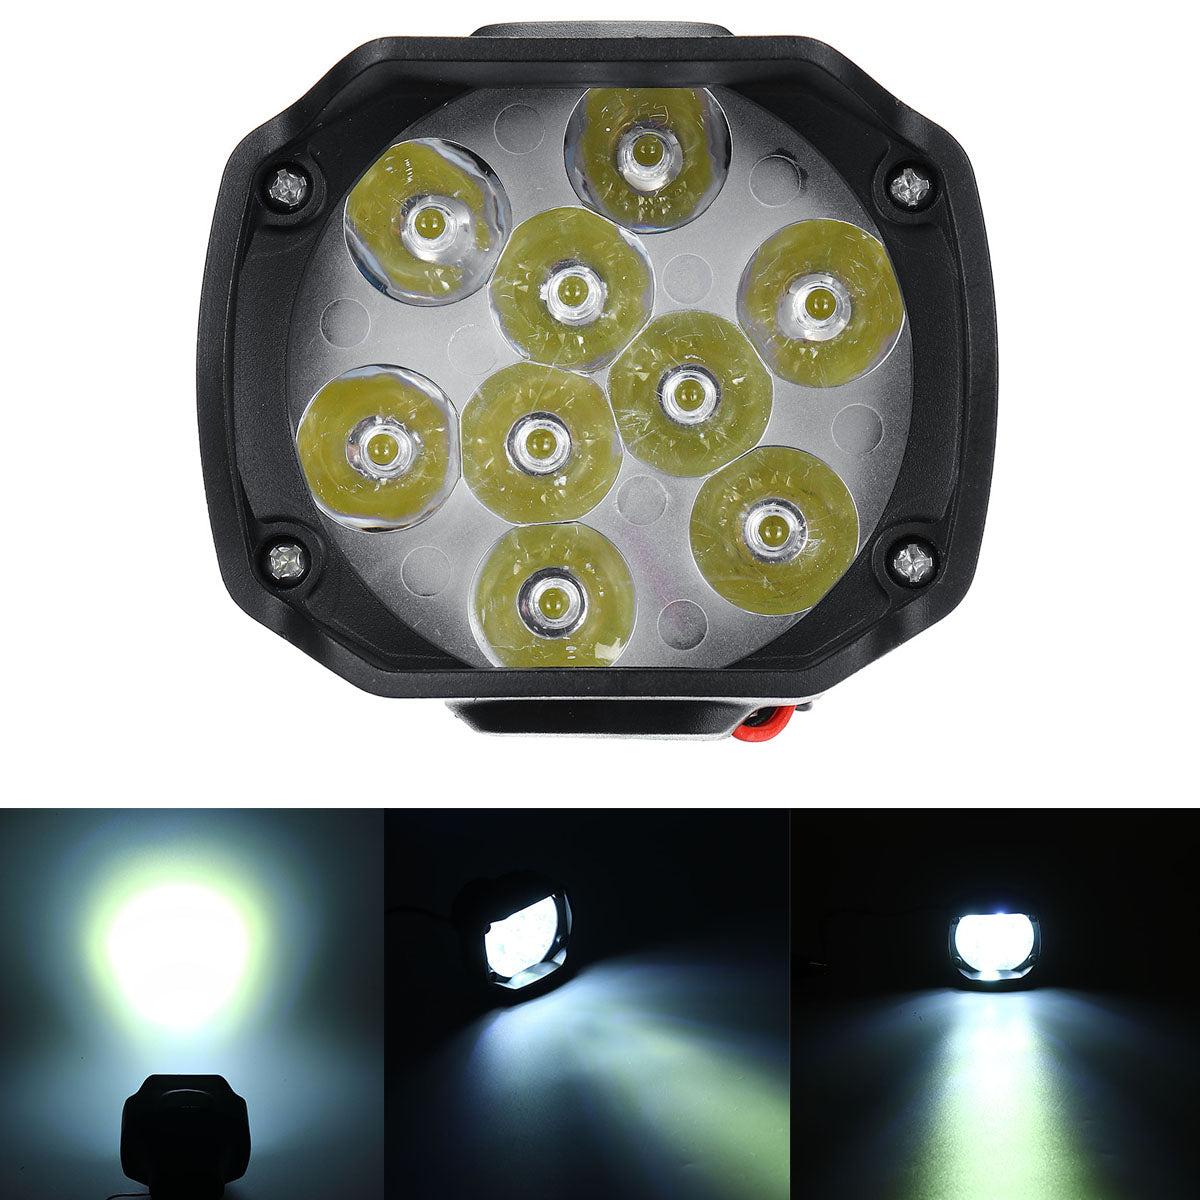 Olive Drab 12V10W 1000LM 9 LED Super Bright Motorcycle Headlight Bulb Work Light Fog Driving Spot Lamp Night Headlamp For UTV ATV